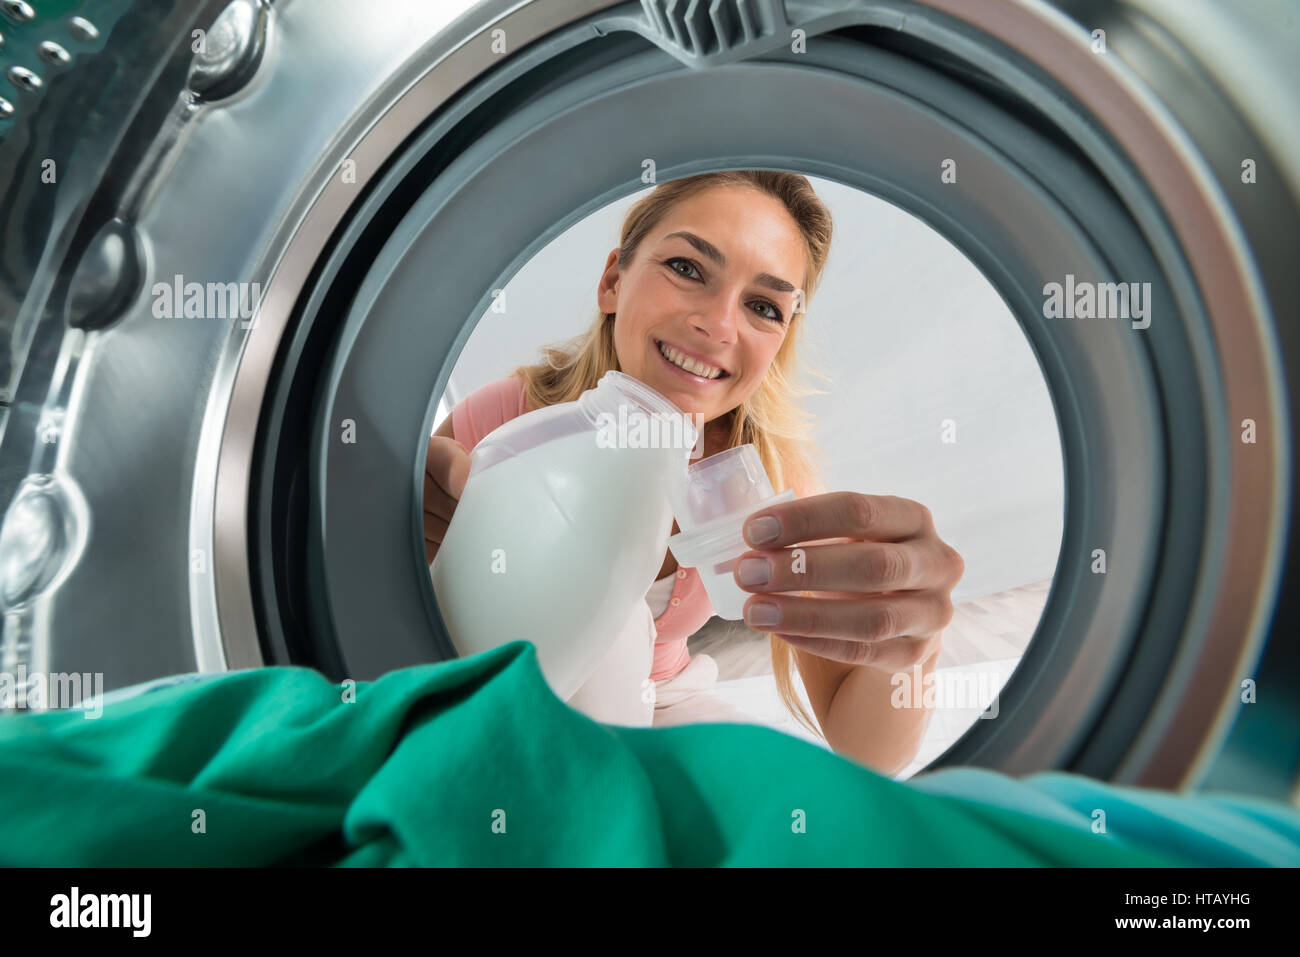 Young Smiling Woman Pouring détergent dans un couvercle de l'intérieur de la machine à laver Banque D'Images